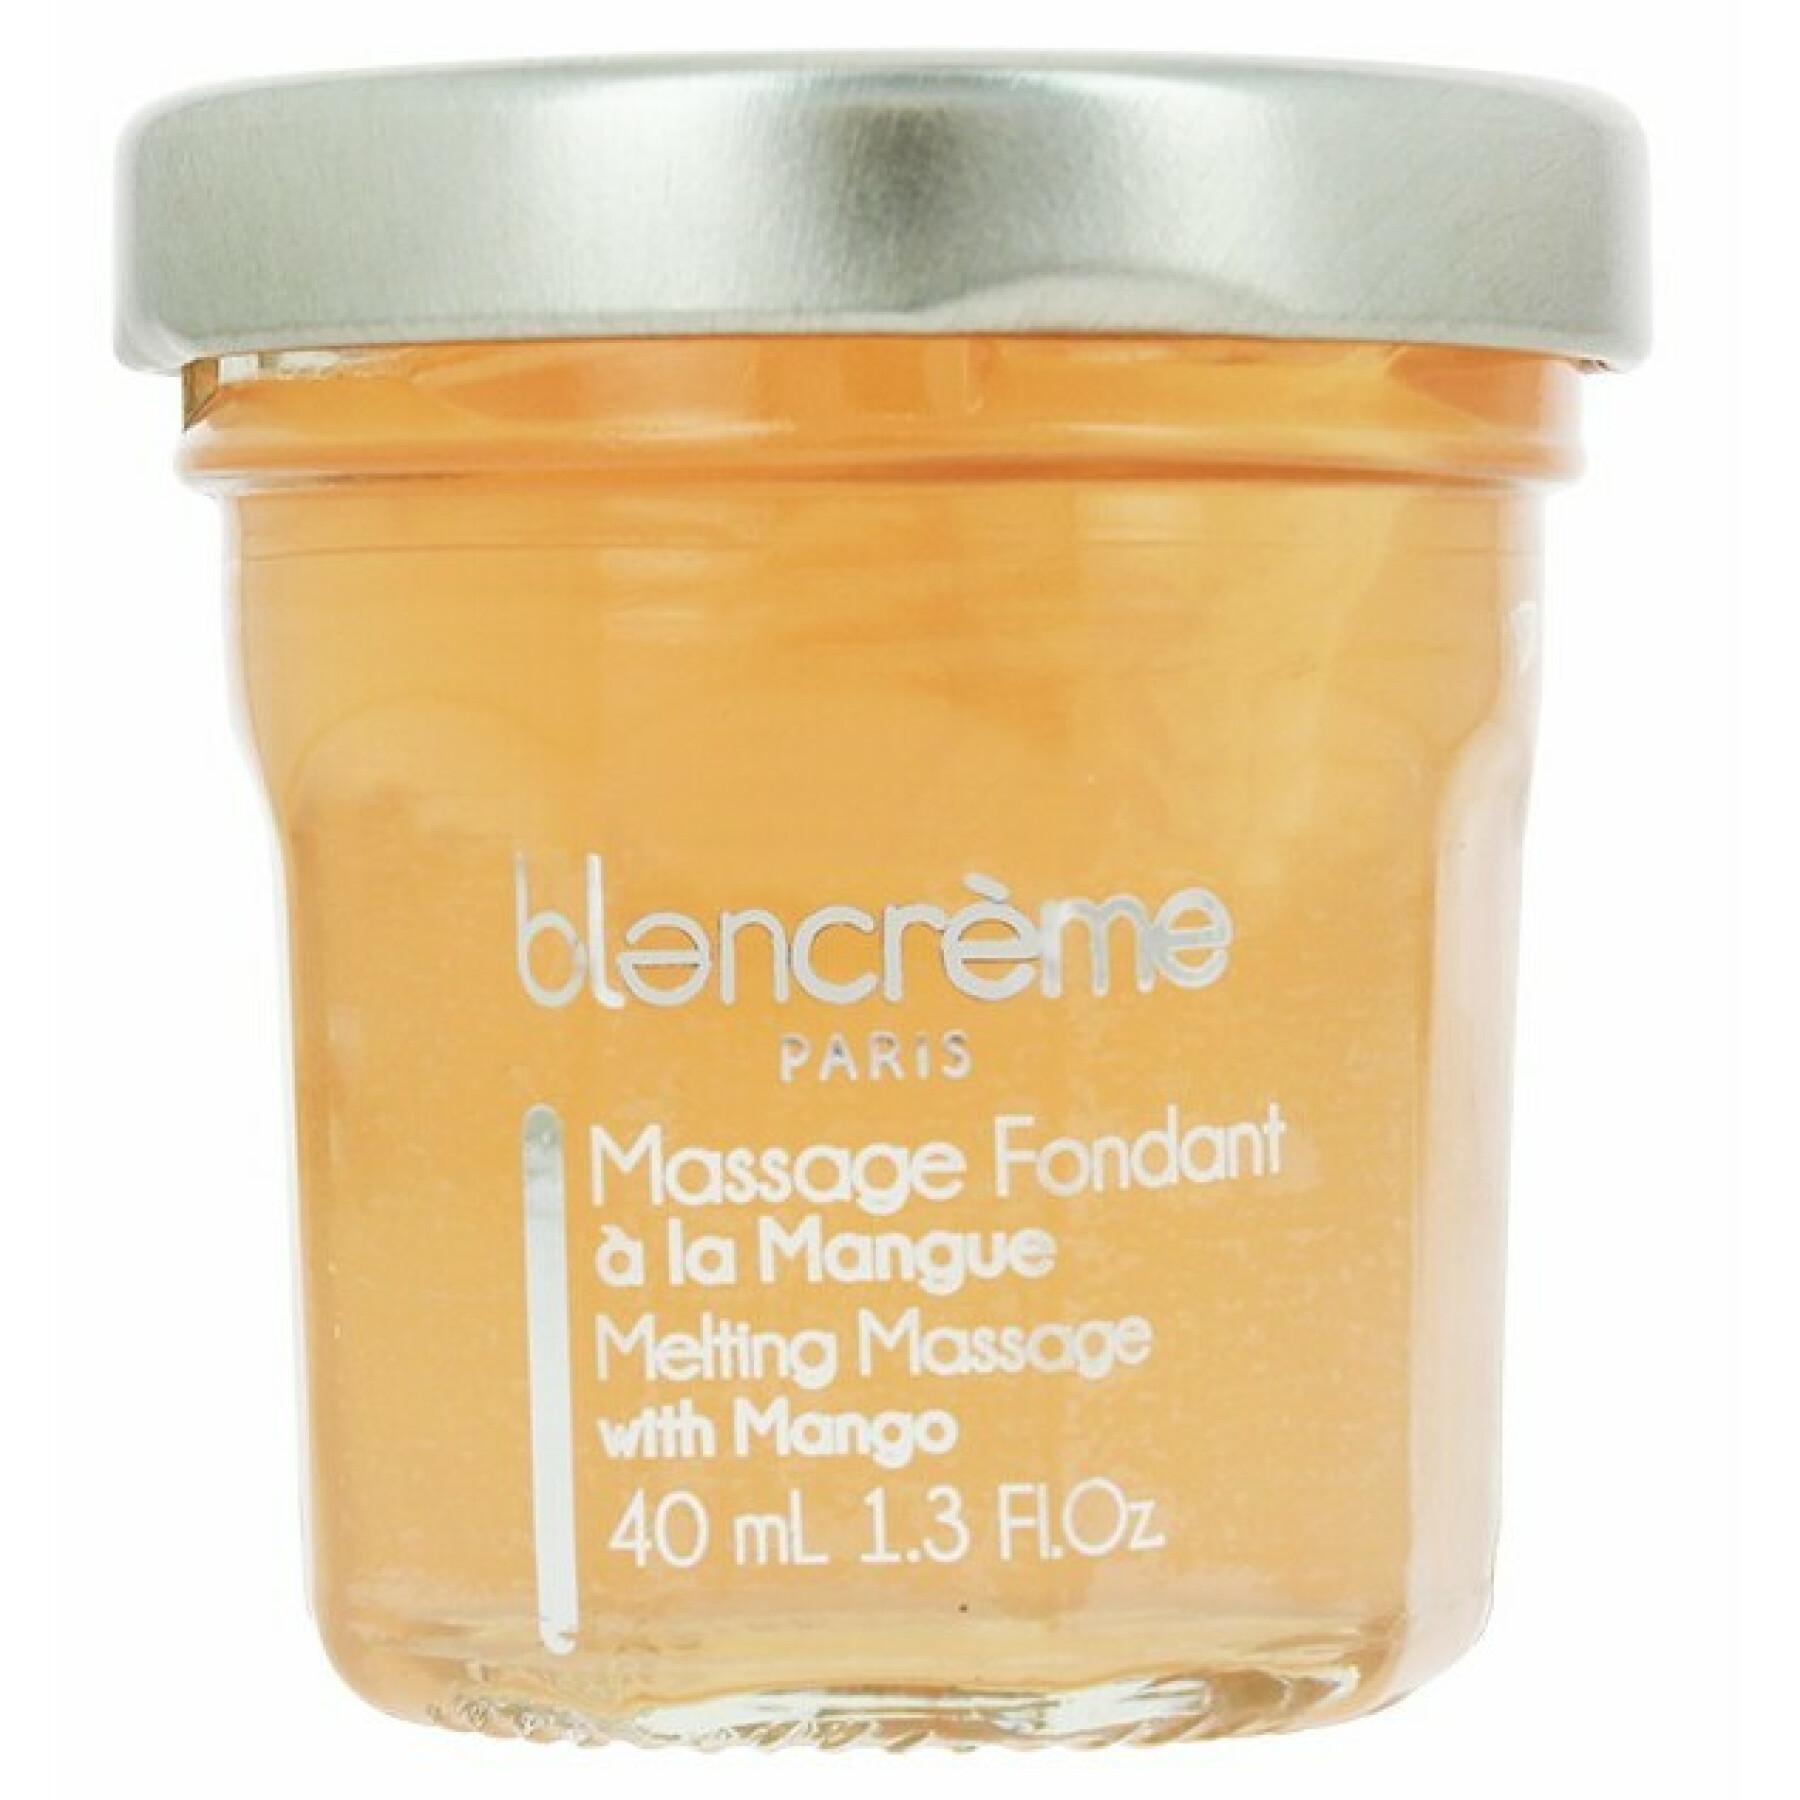 Schmelzende Massage - Mango - Blancreme 40 ml